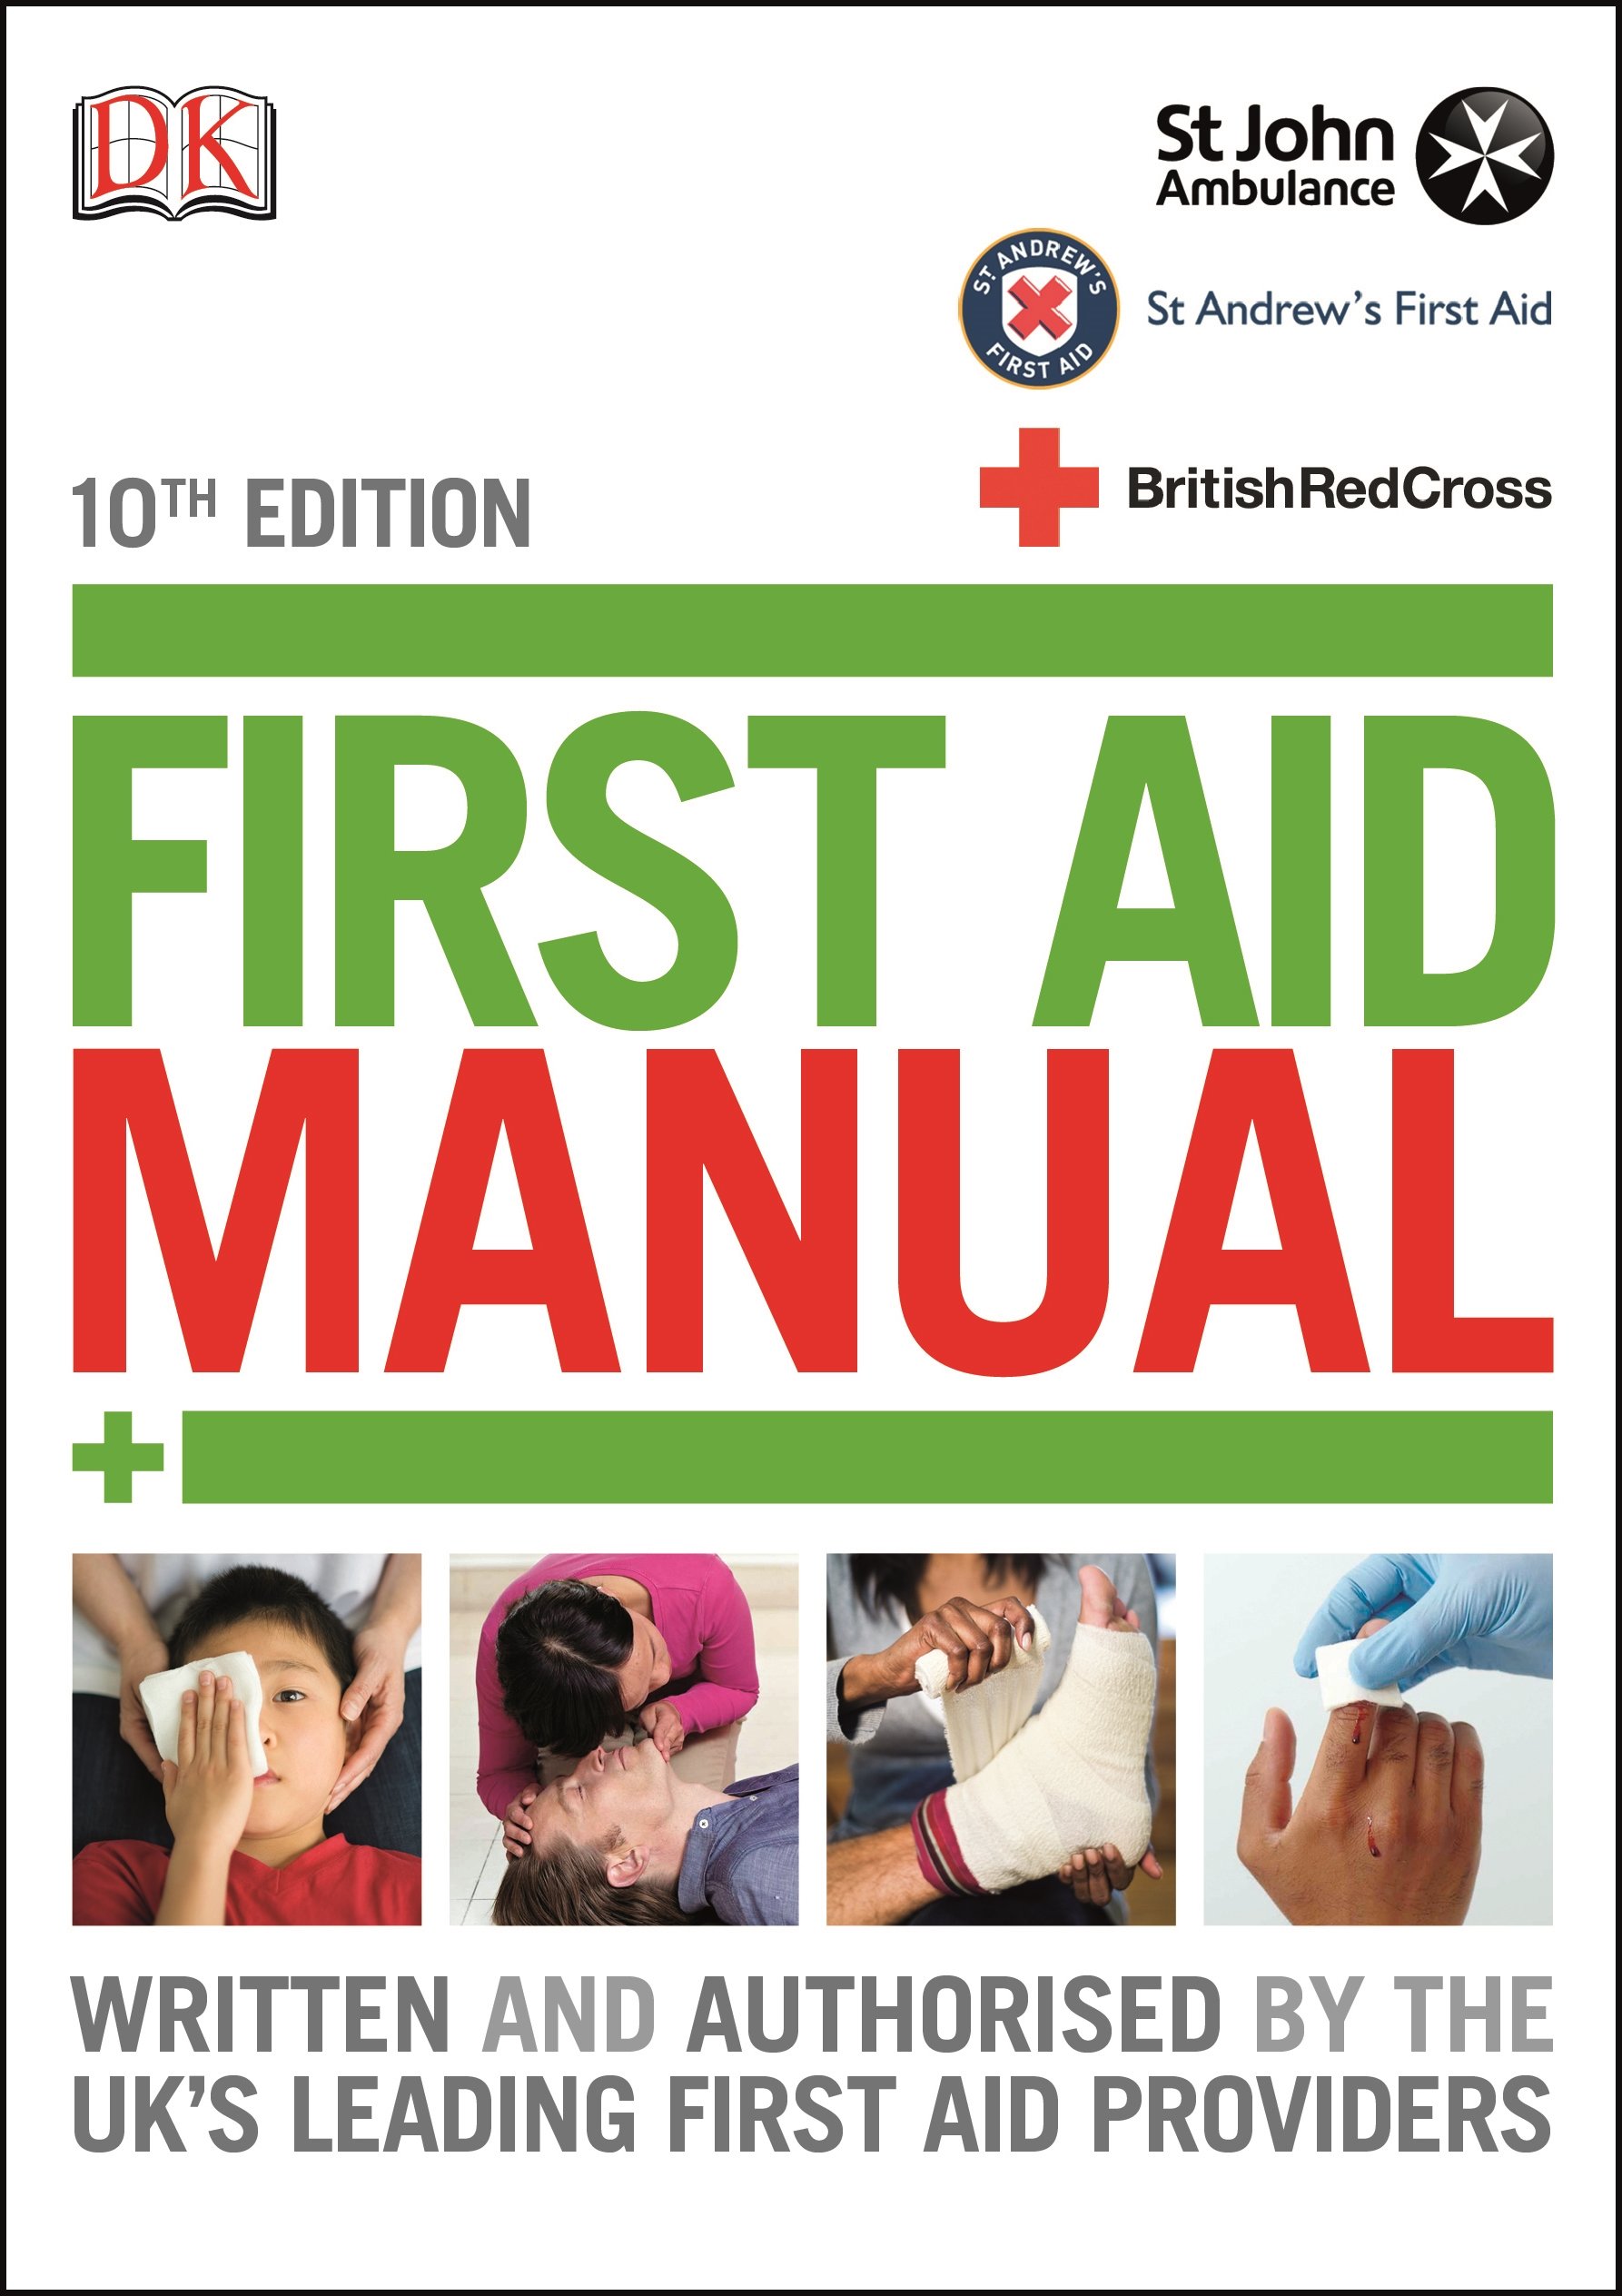 First Aid Manual - DK